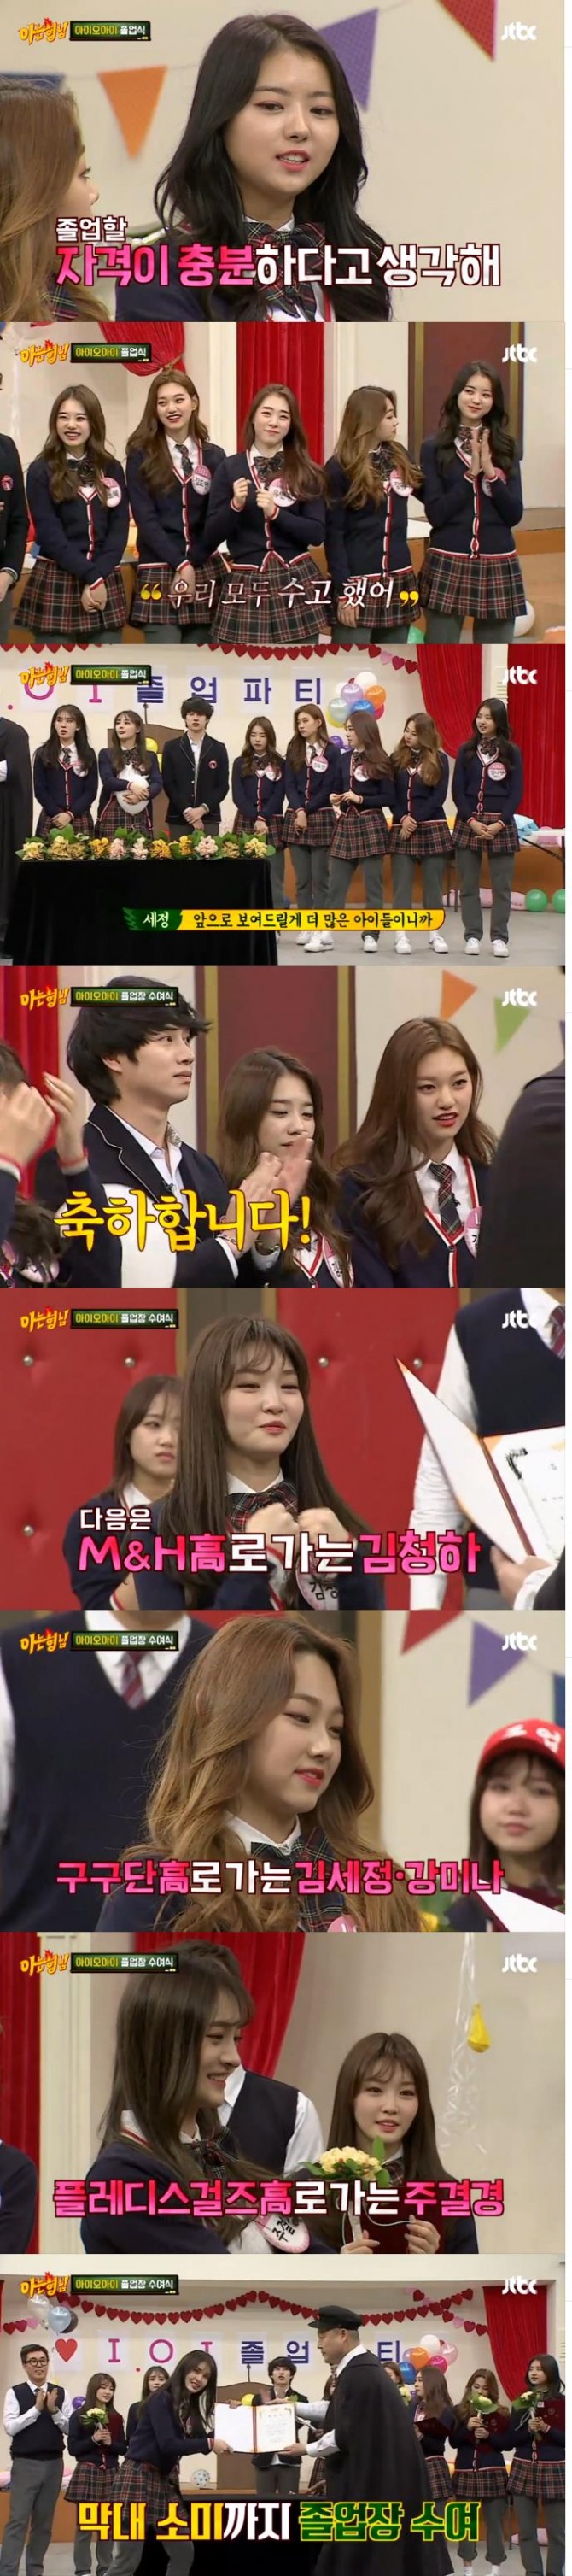 3일 밤 방송된 JTBC '아는 형님'에서는 걸그룹 아이오아이(I.O.I)가 출연해 예능감을 뽐내고 졸업식을 치르는 장면이 그려졌다./사진=JTBC방송 캡처